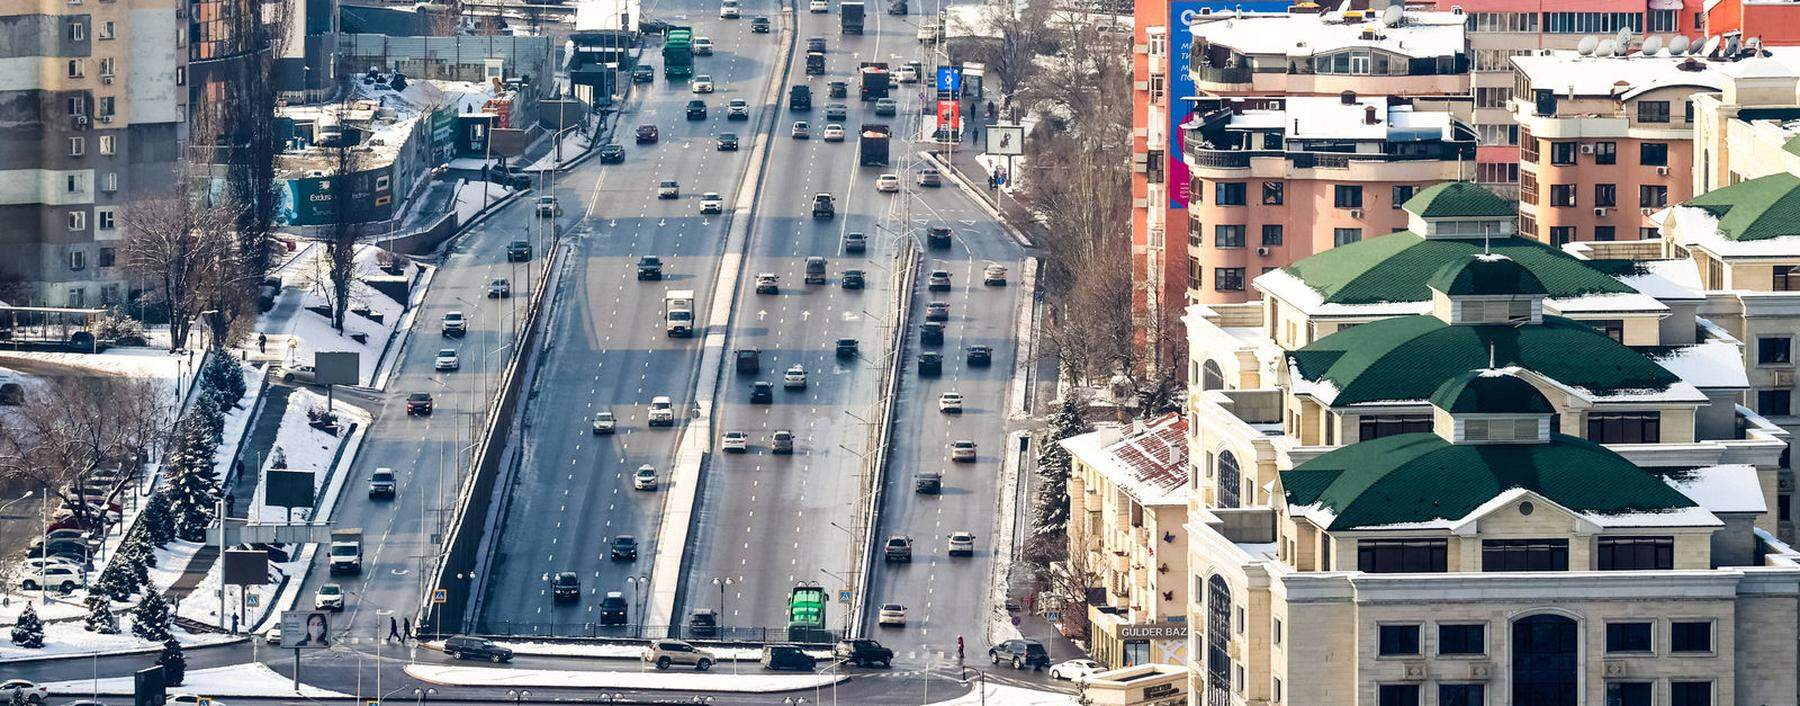 Almaty, Kasachstan.